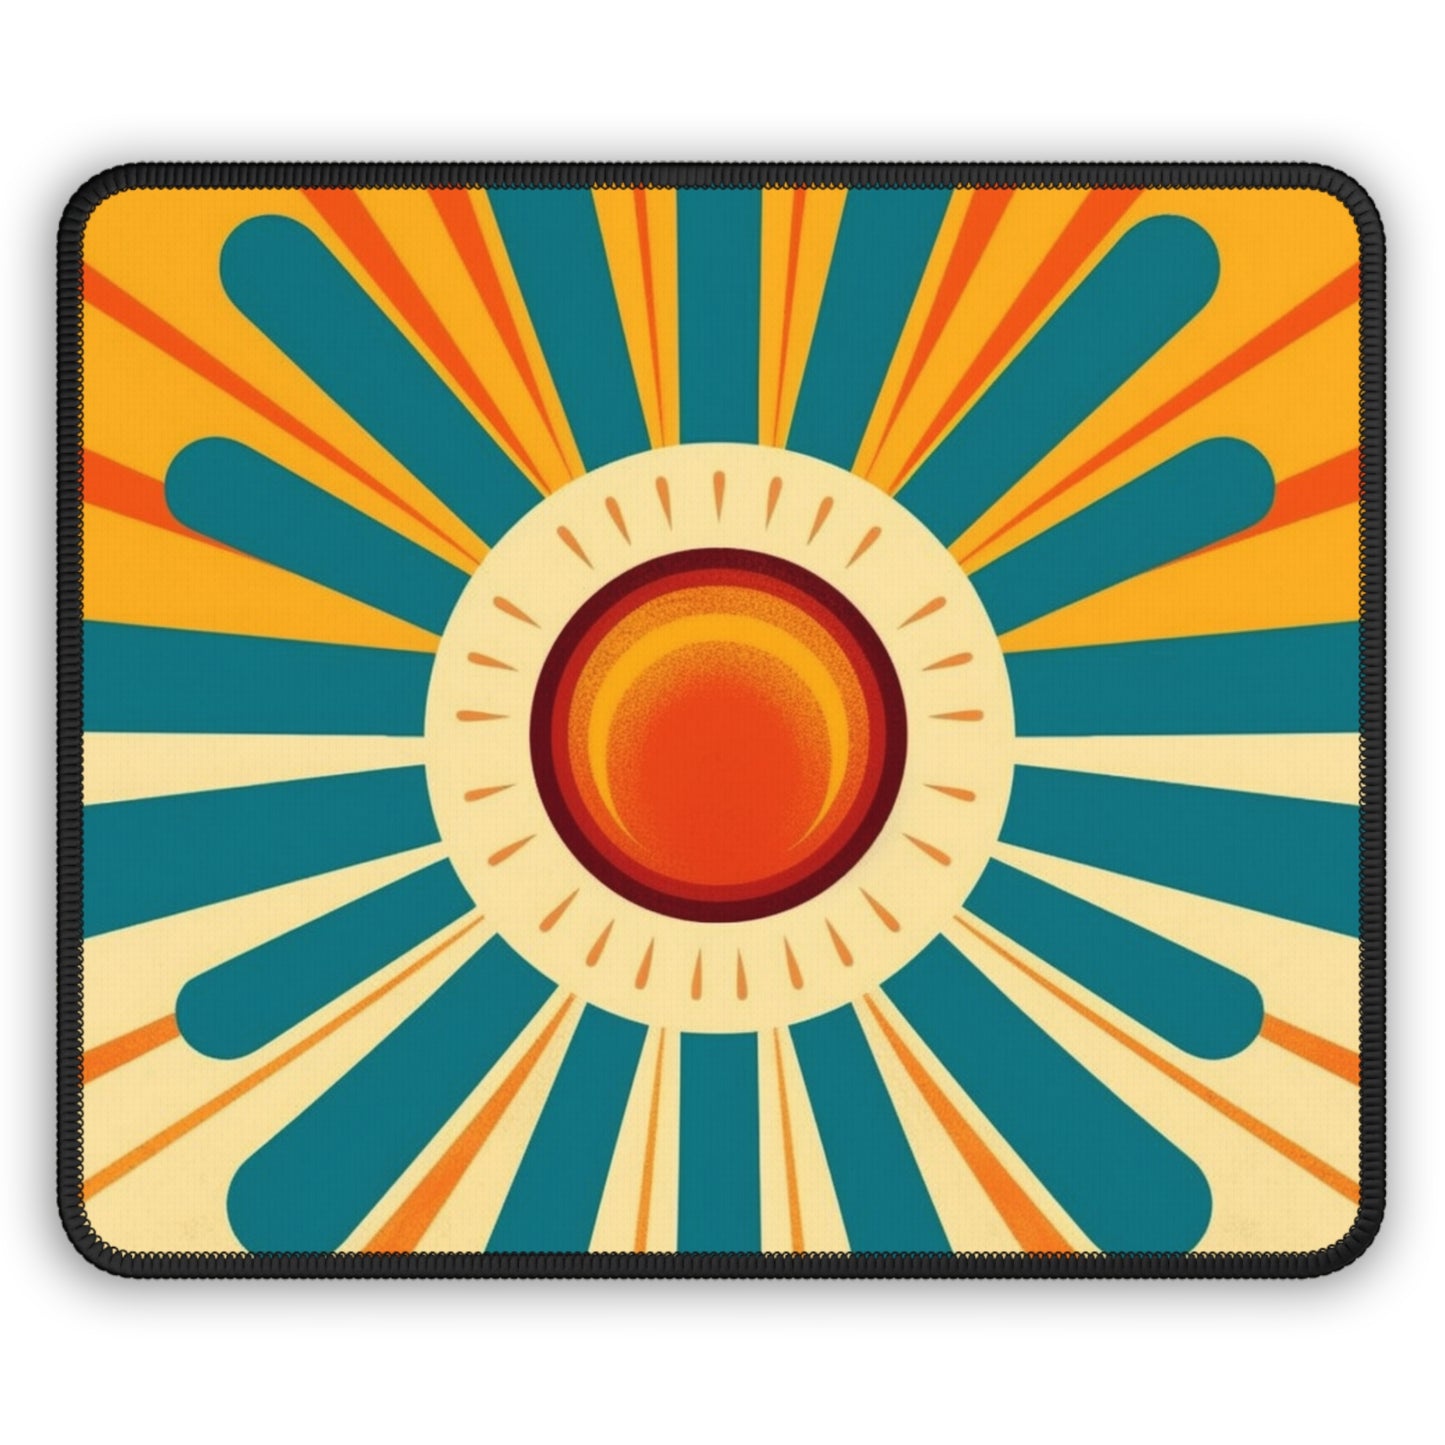 Atomic Age Sunshine: Midcentury Modern Sun Gaming Mouse Pad